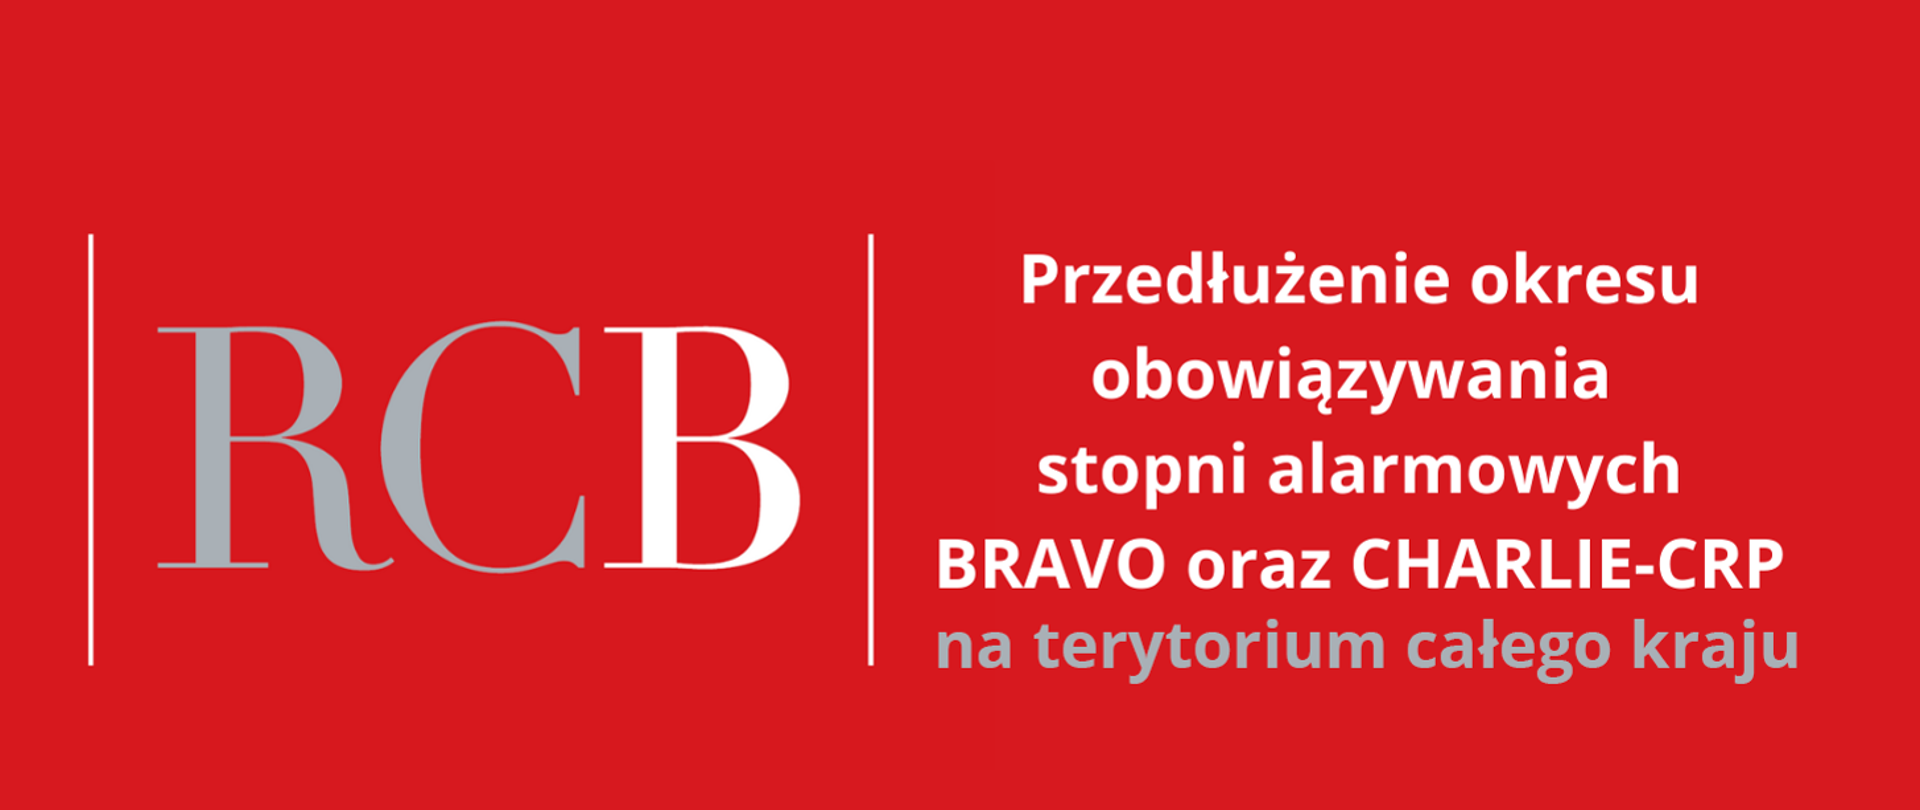 Banner RCB z grafiką komunikującą przedłużenie okresu obowiązywania stopni alarmowych BRAVO oraz CHARLIE-CRP na terytorium całego kraju.